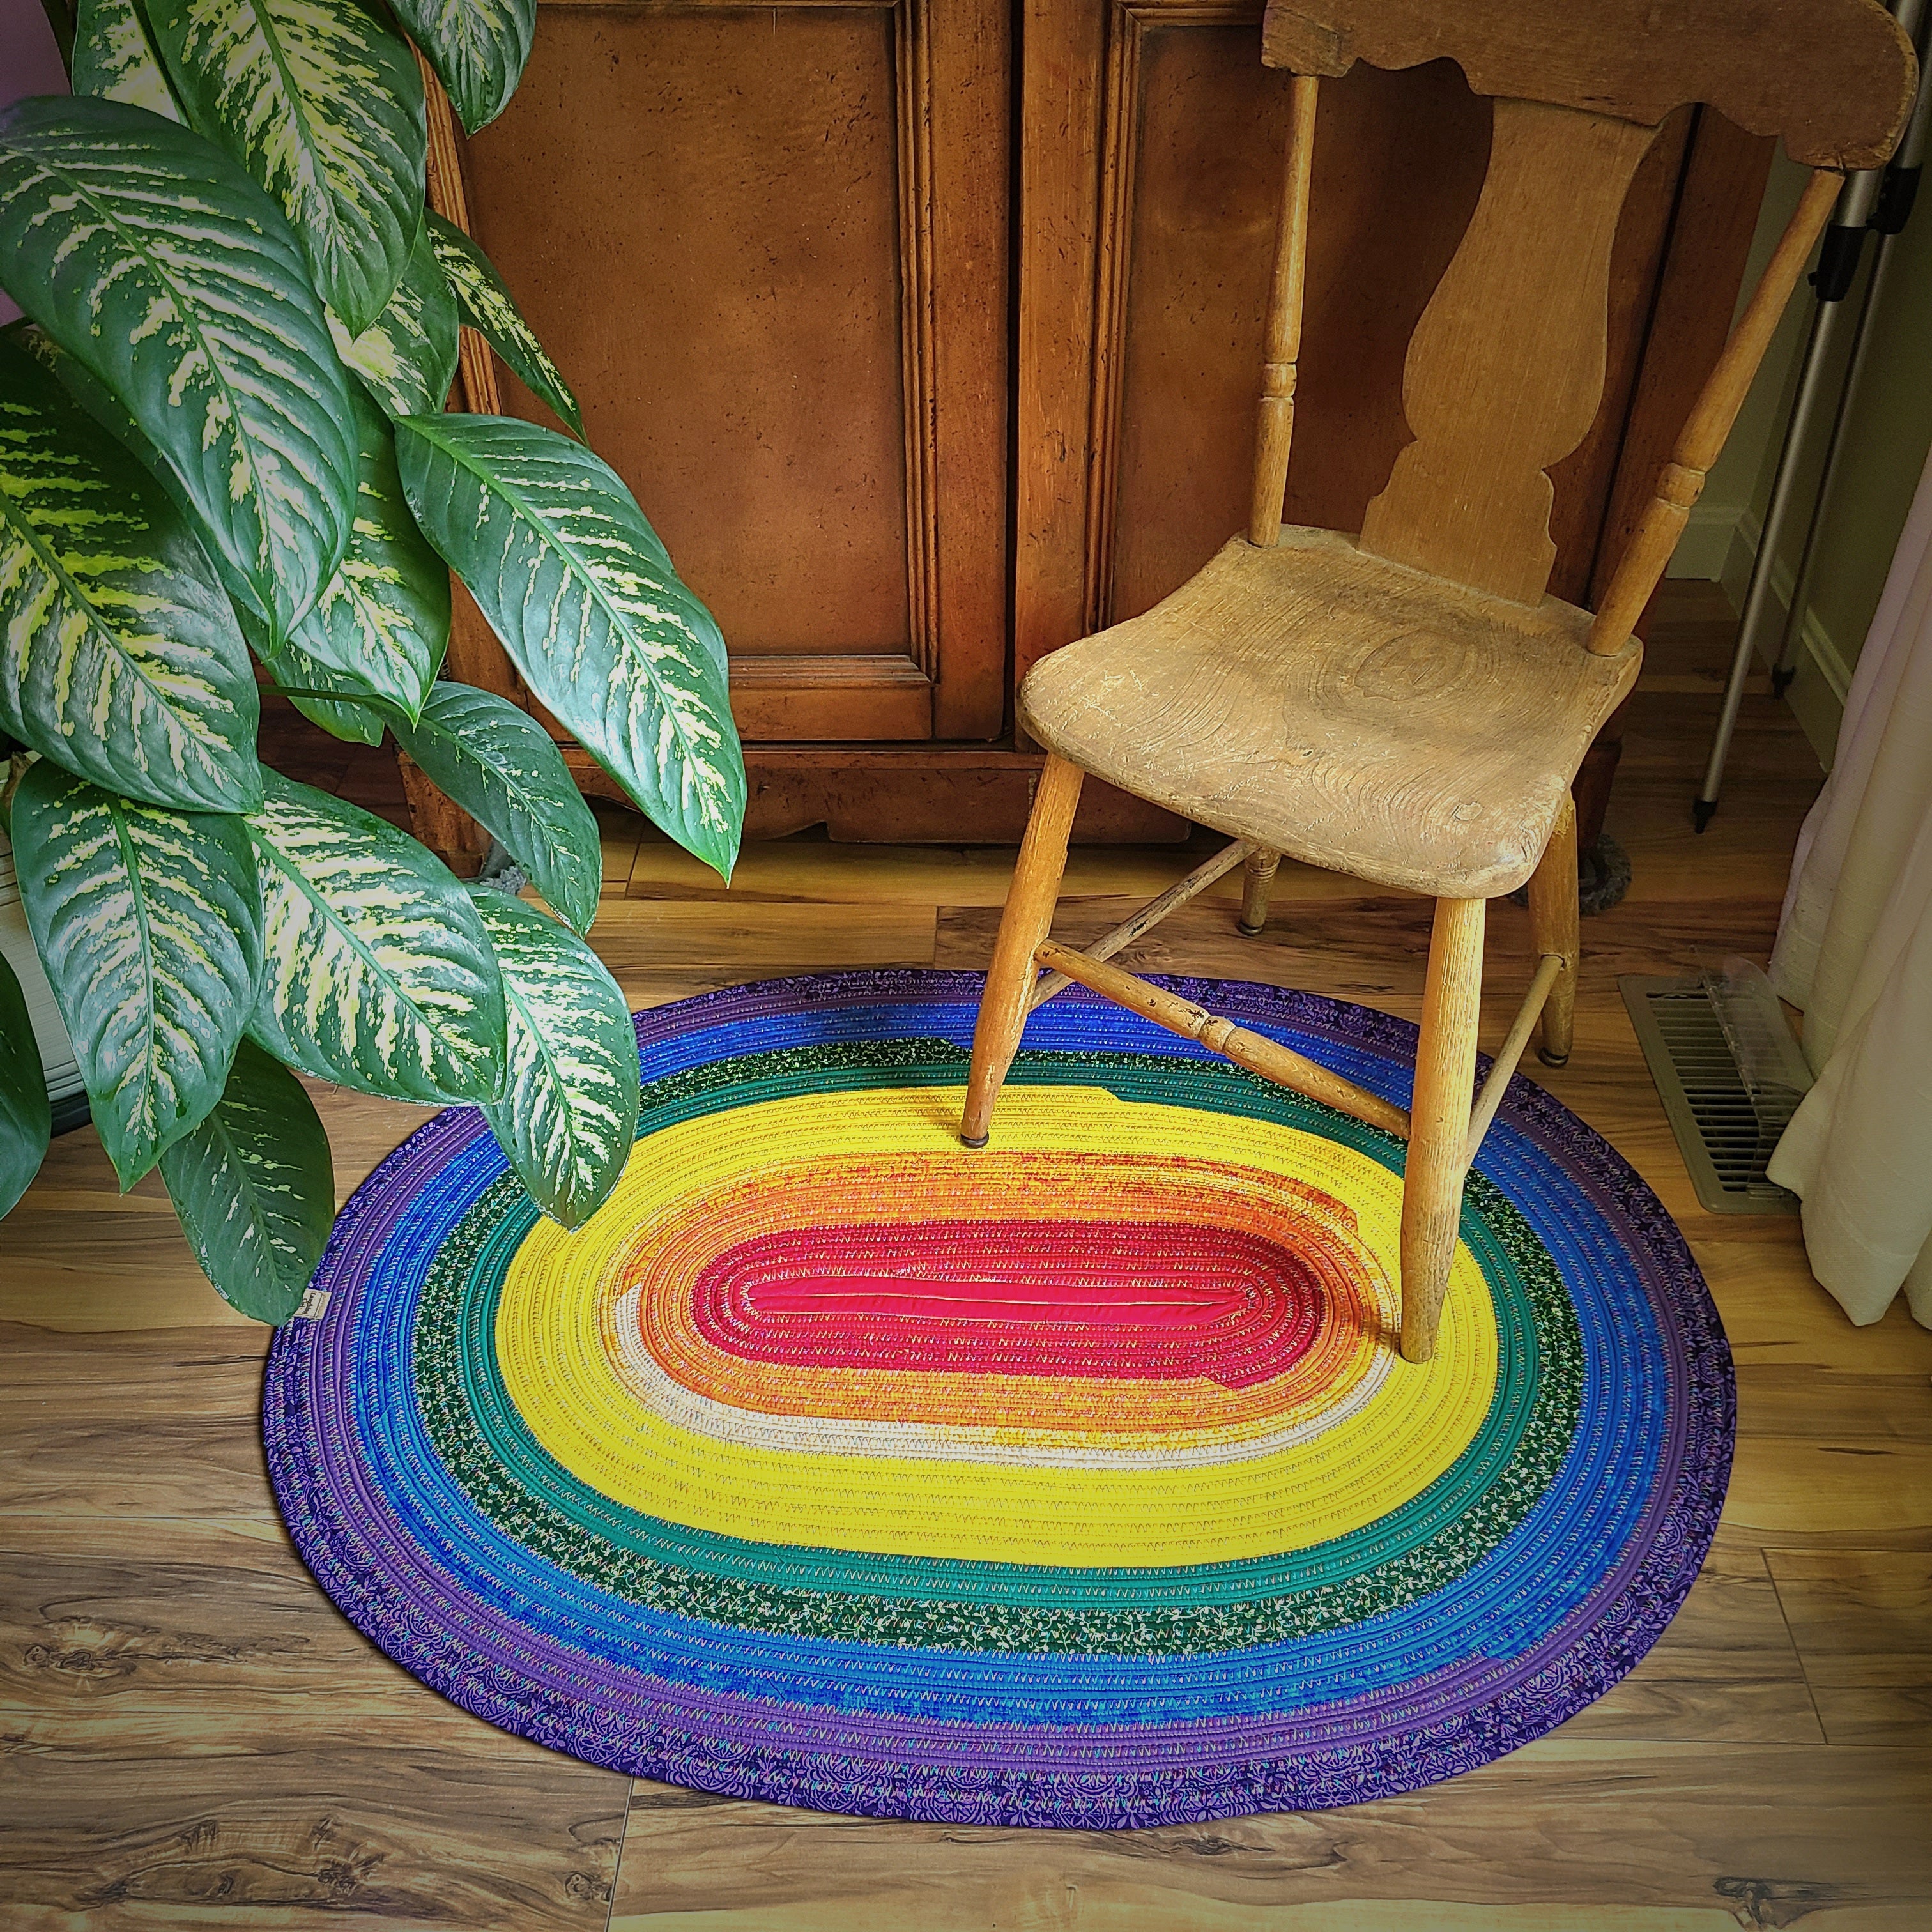 Rainbow Jelly Roll rug